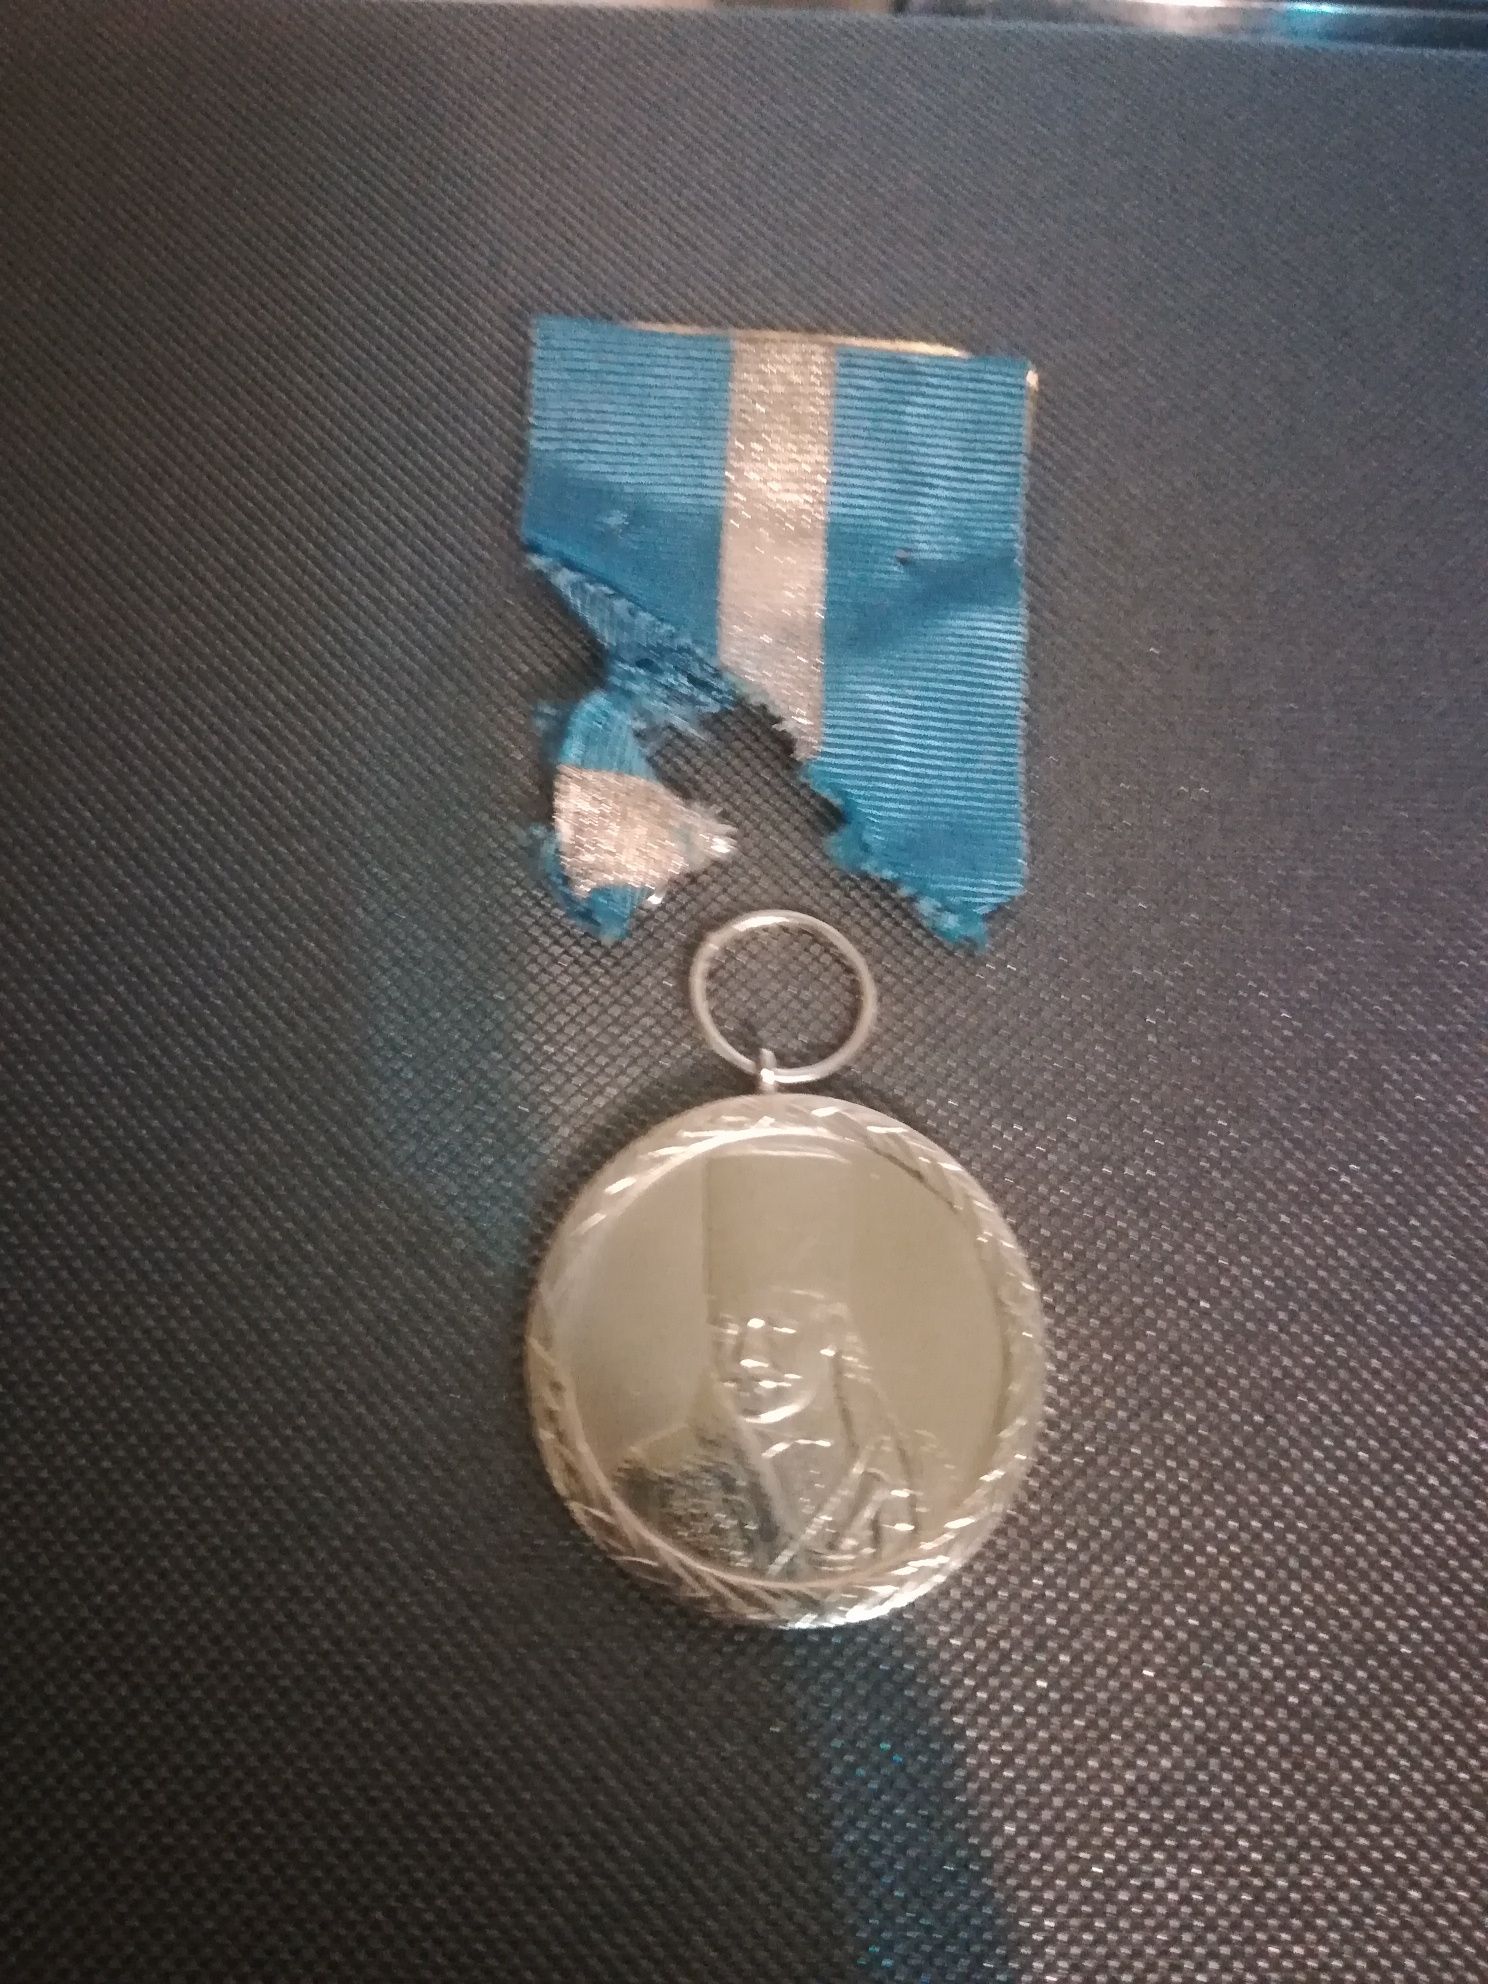 Medalia Tudor Vladimirescu clasa a 1 a